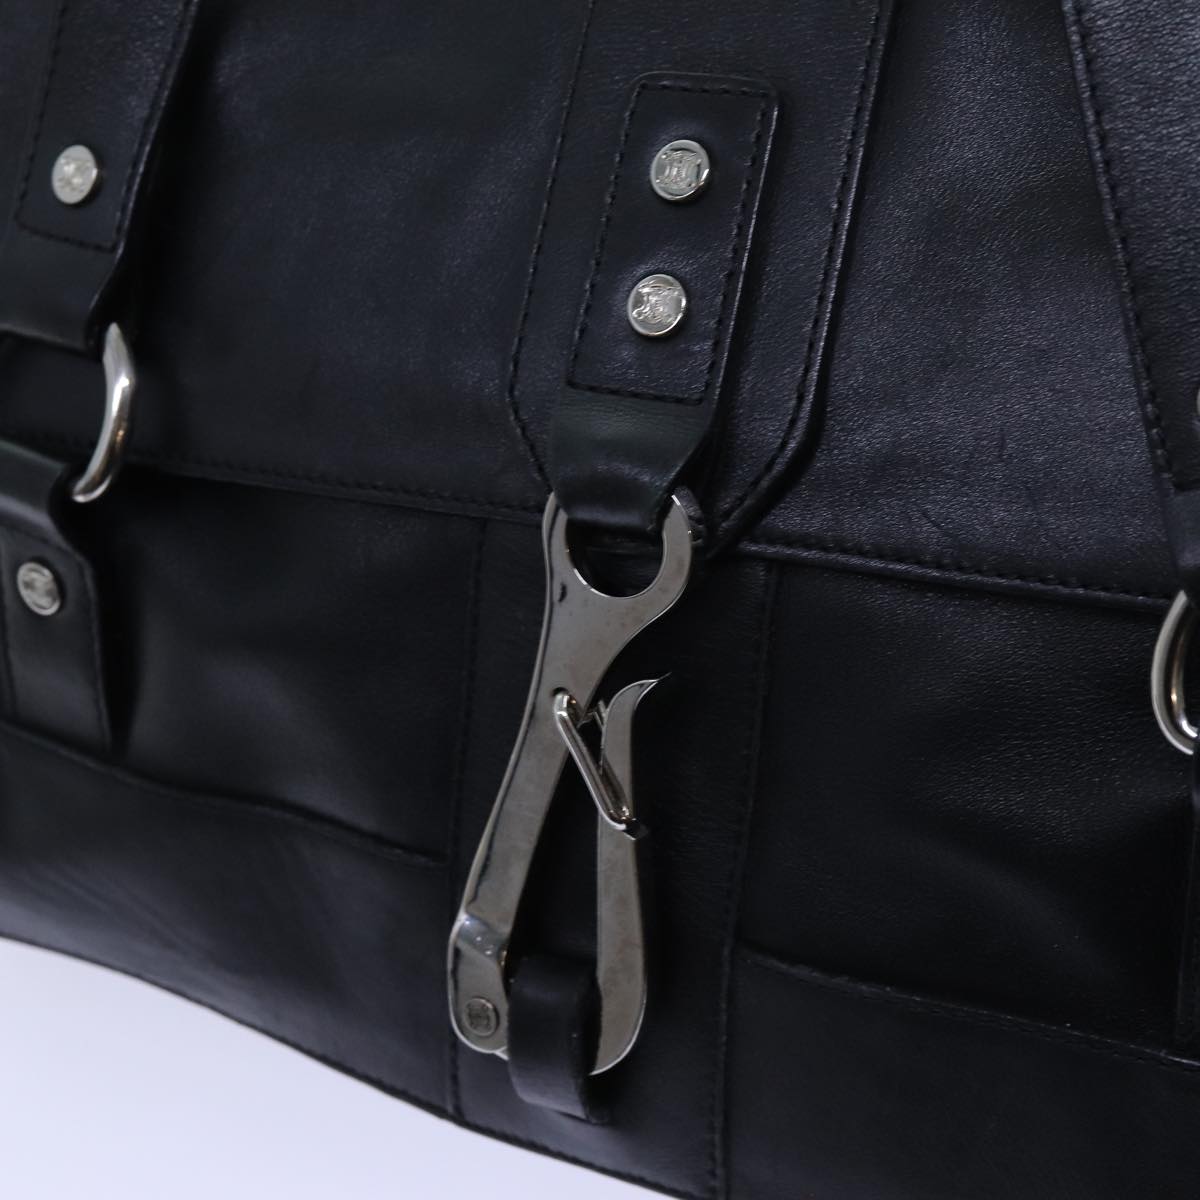 CELINE Shoulder Bag Leather Black Auth hk1202